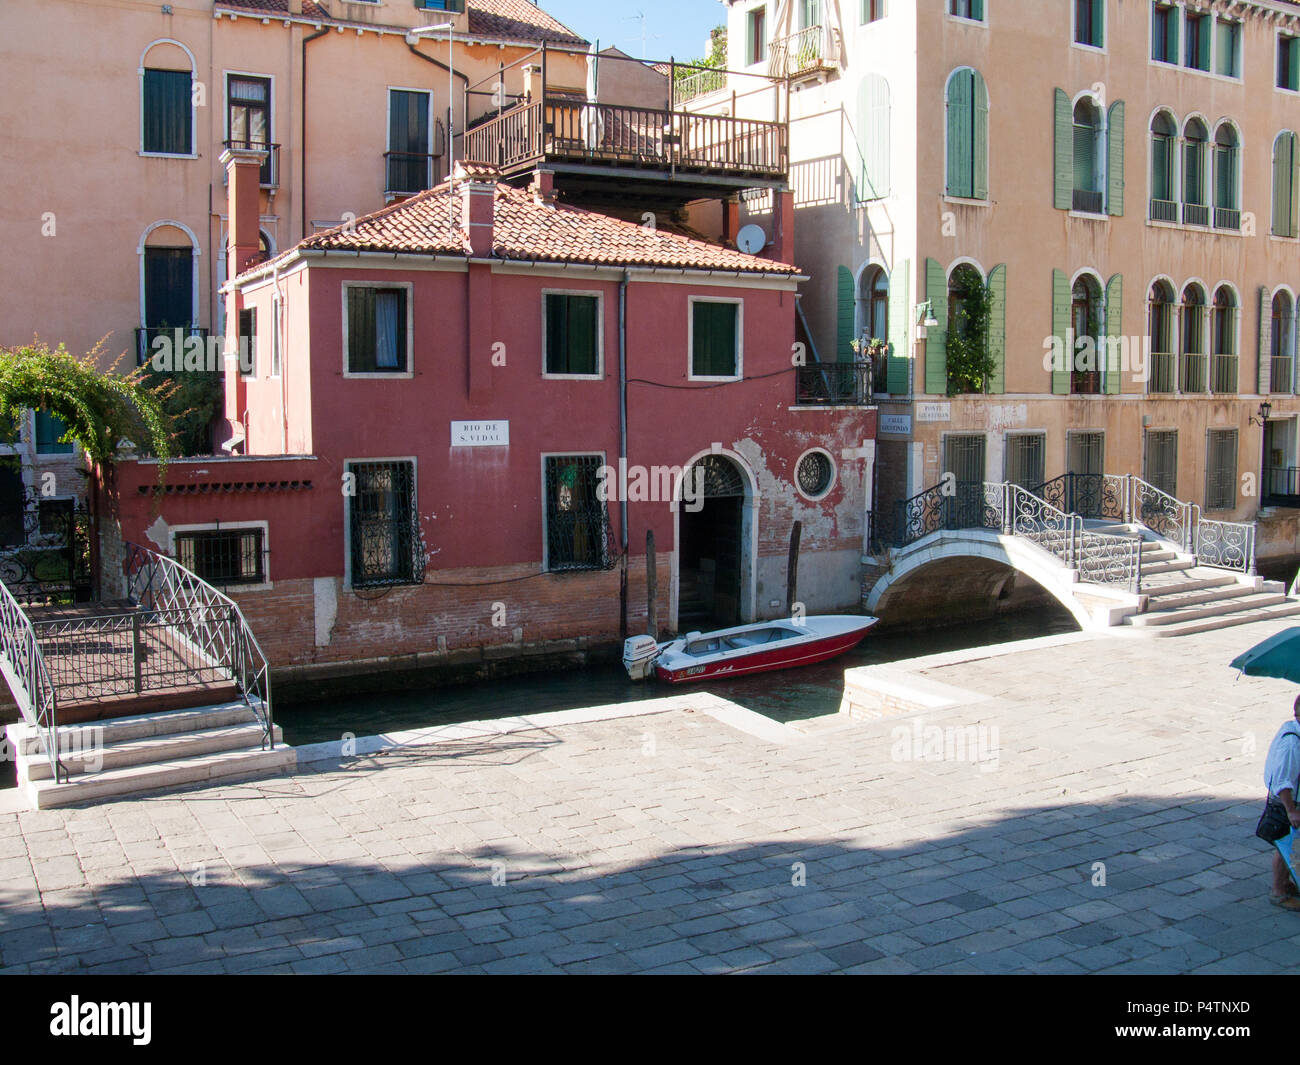 Venezia, Italia, 2 ottobre 2011: Bellissima architettura veneziana, piccolo canale Foto Stock